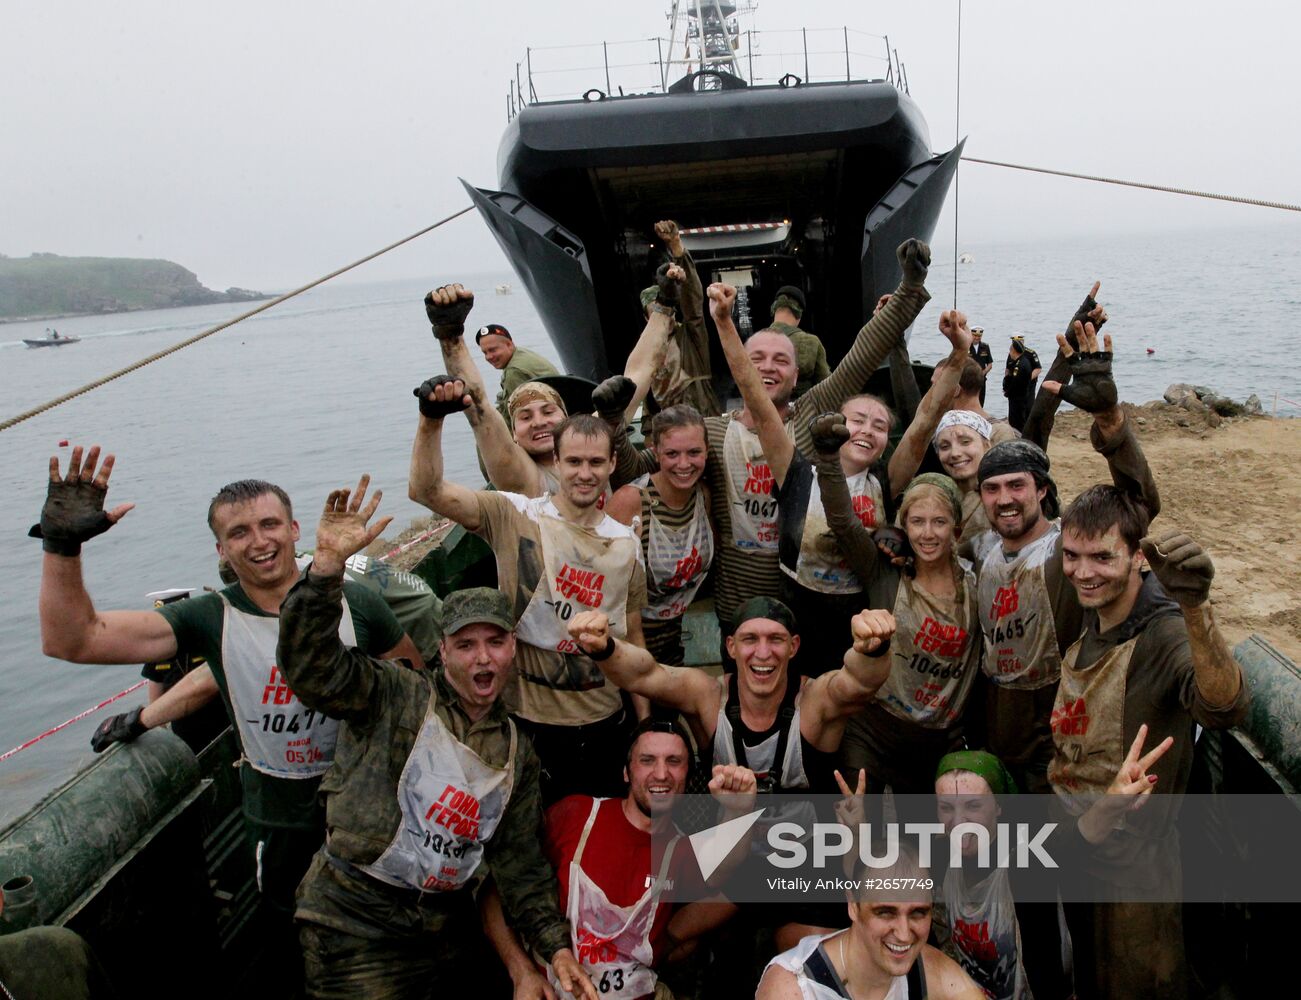 Heroes' Race in Vladivostok